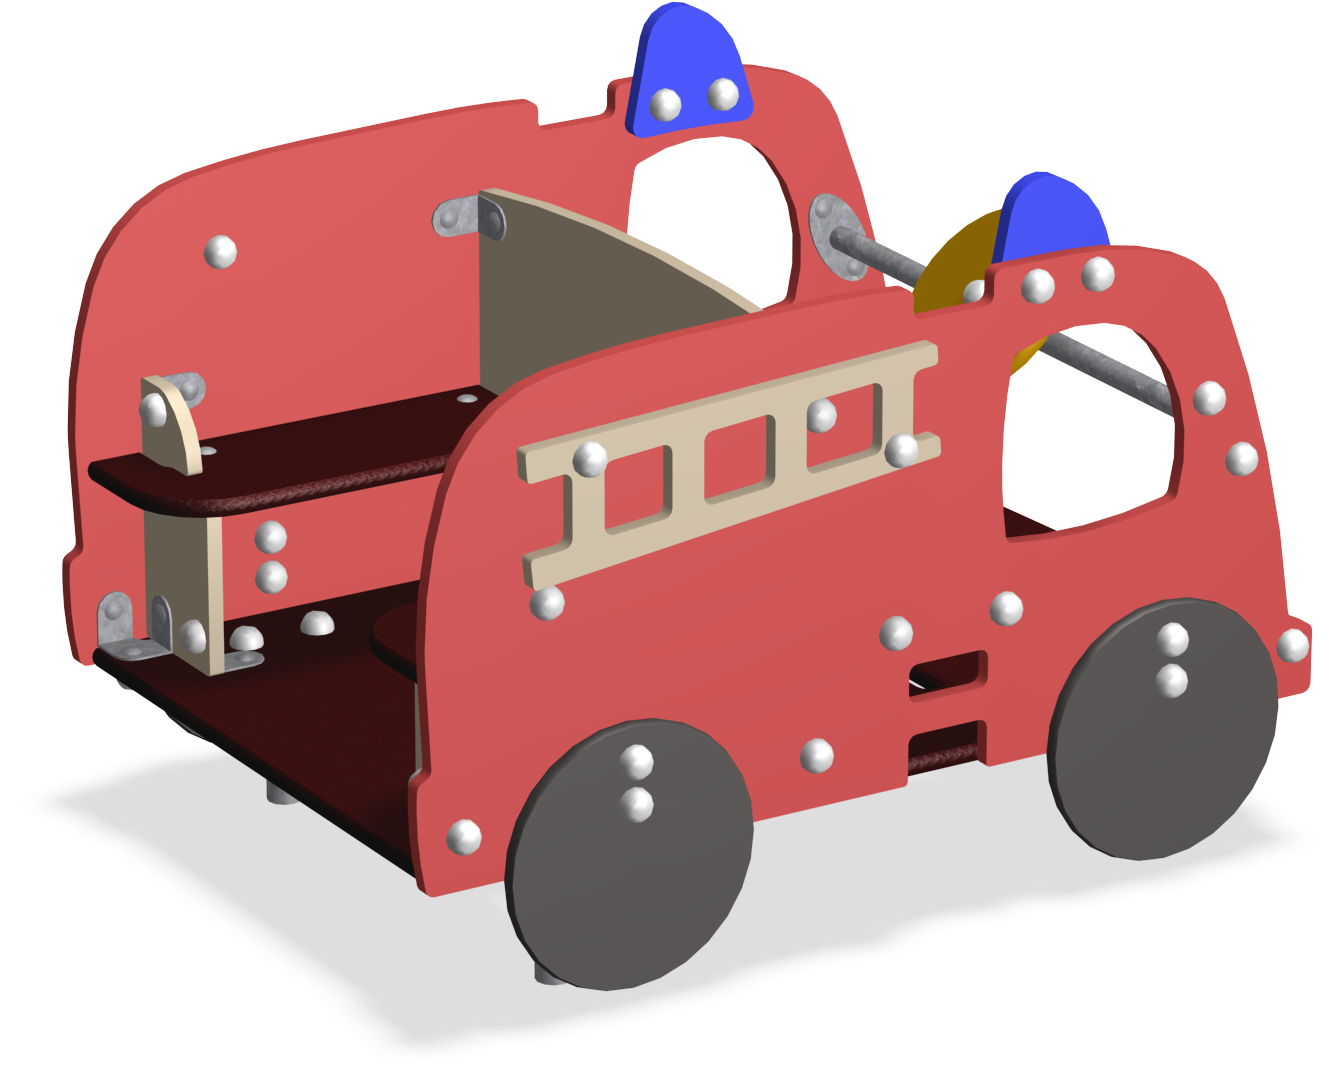 Firetruck - Fire Apparatus (1343x1072)